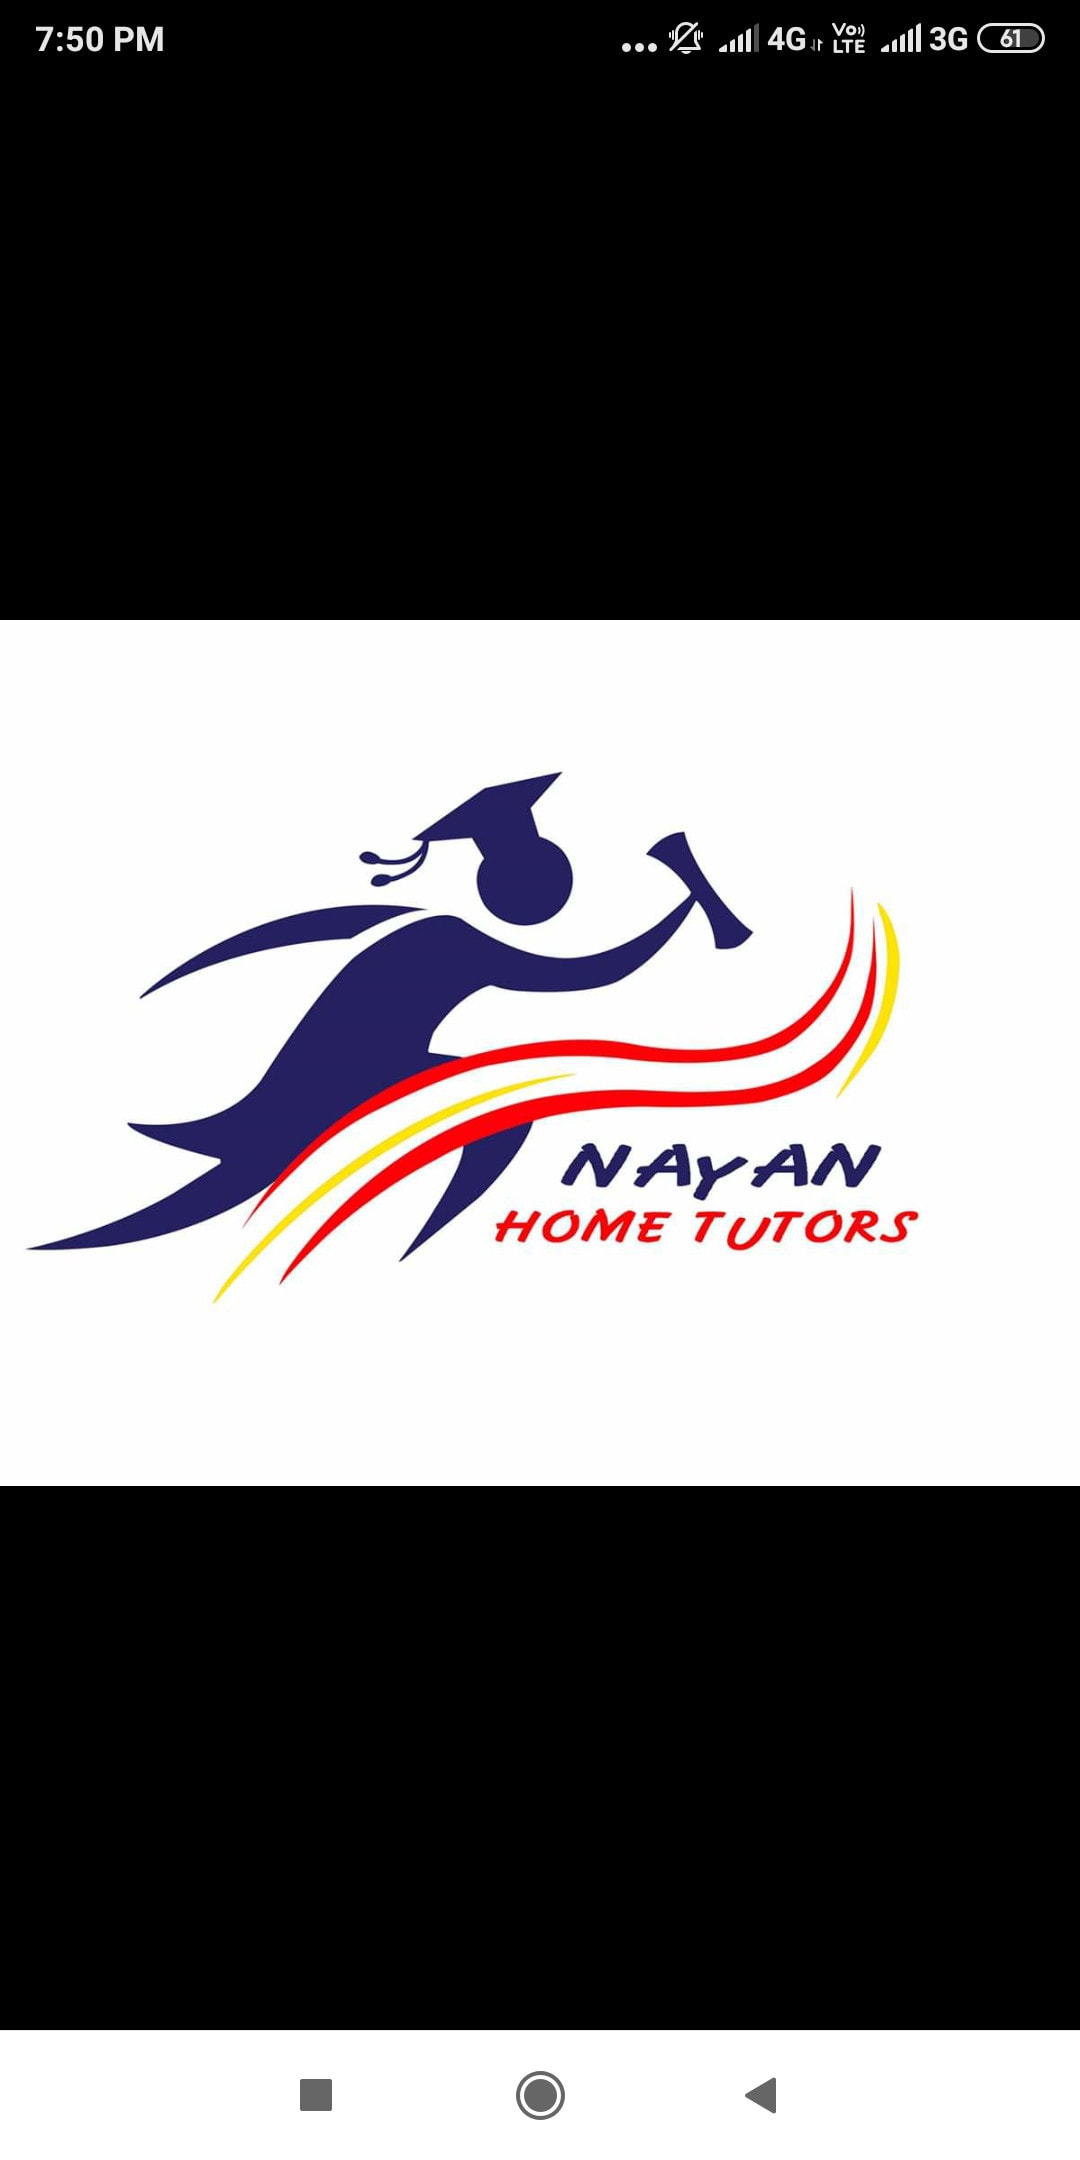 Nayan Home Tutors